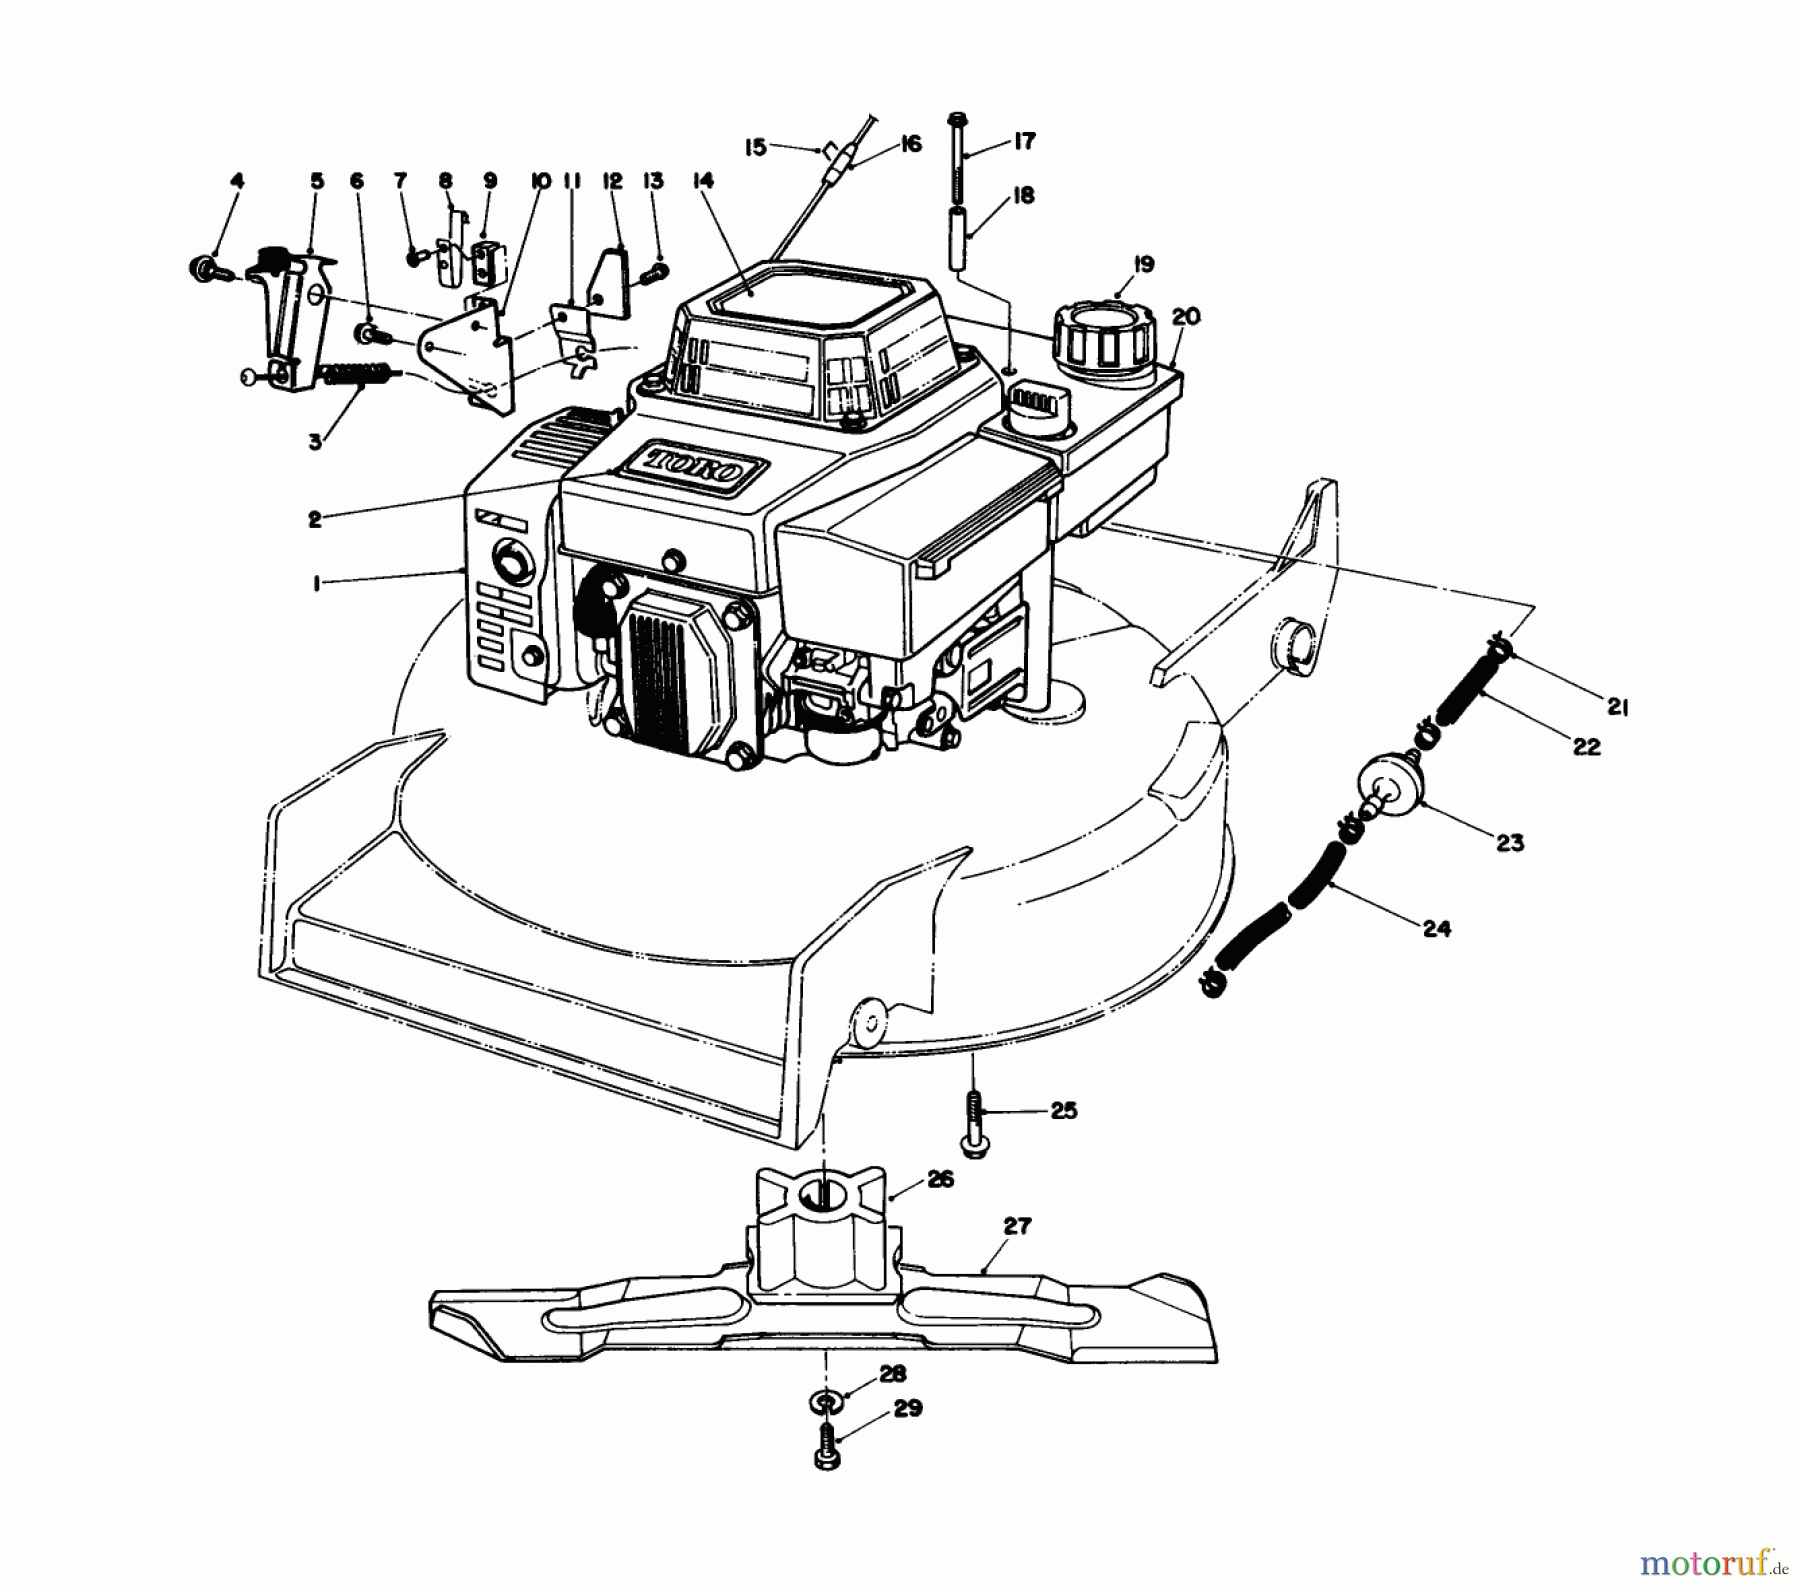  Toro Neu Mowers, Walk-Behind Seite 1 20526 - Toro Lawnmower, 1988 (8000001-8999999) ENGINE ASSEMBLY